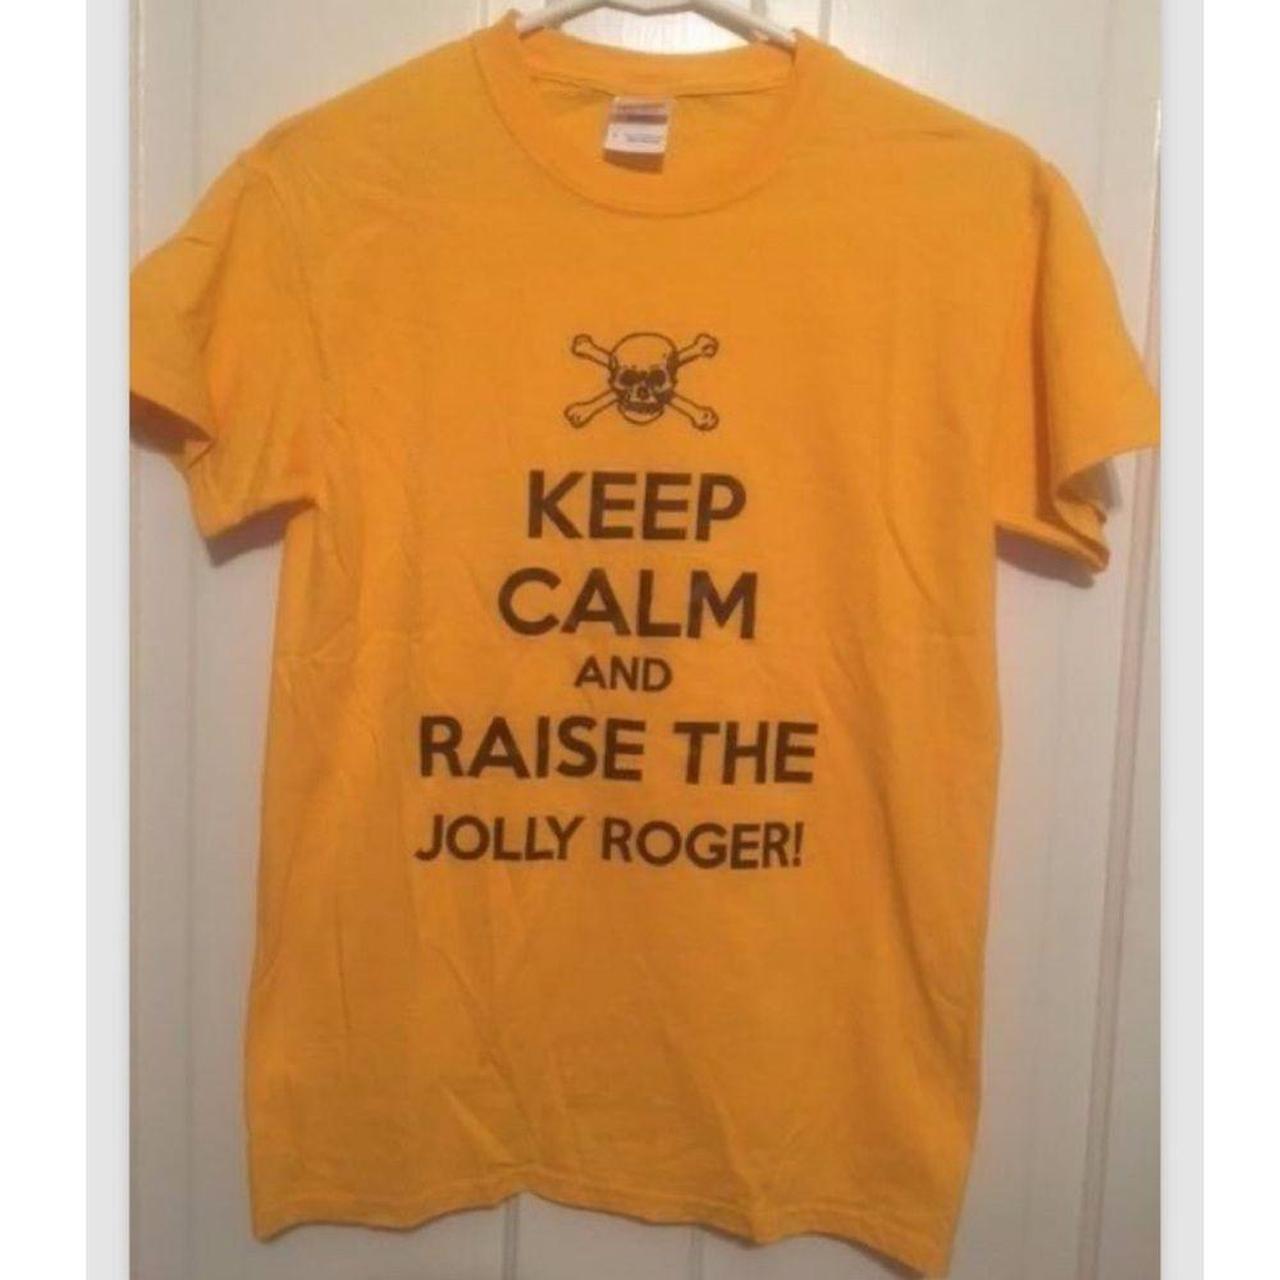 Raise The Jolly Roger' Men's T-Shirt